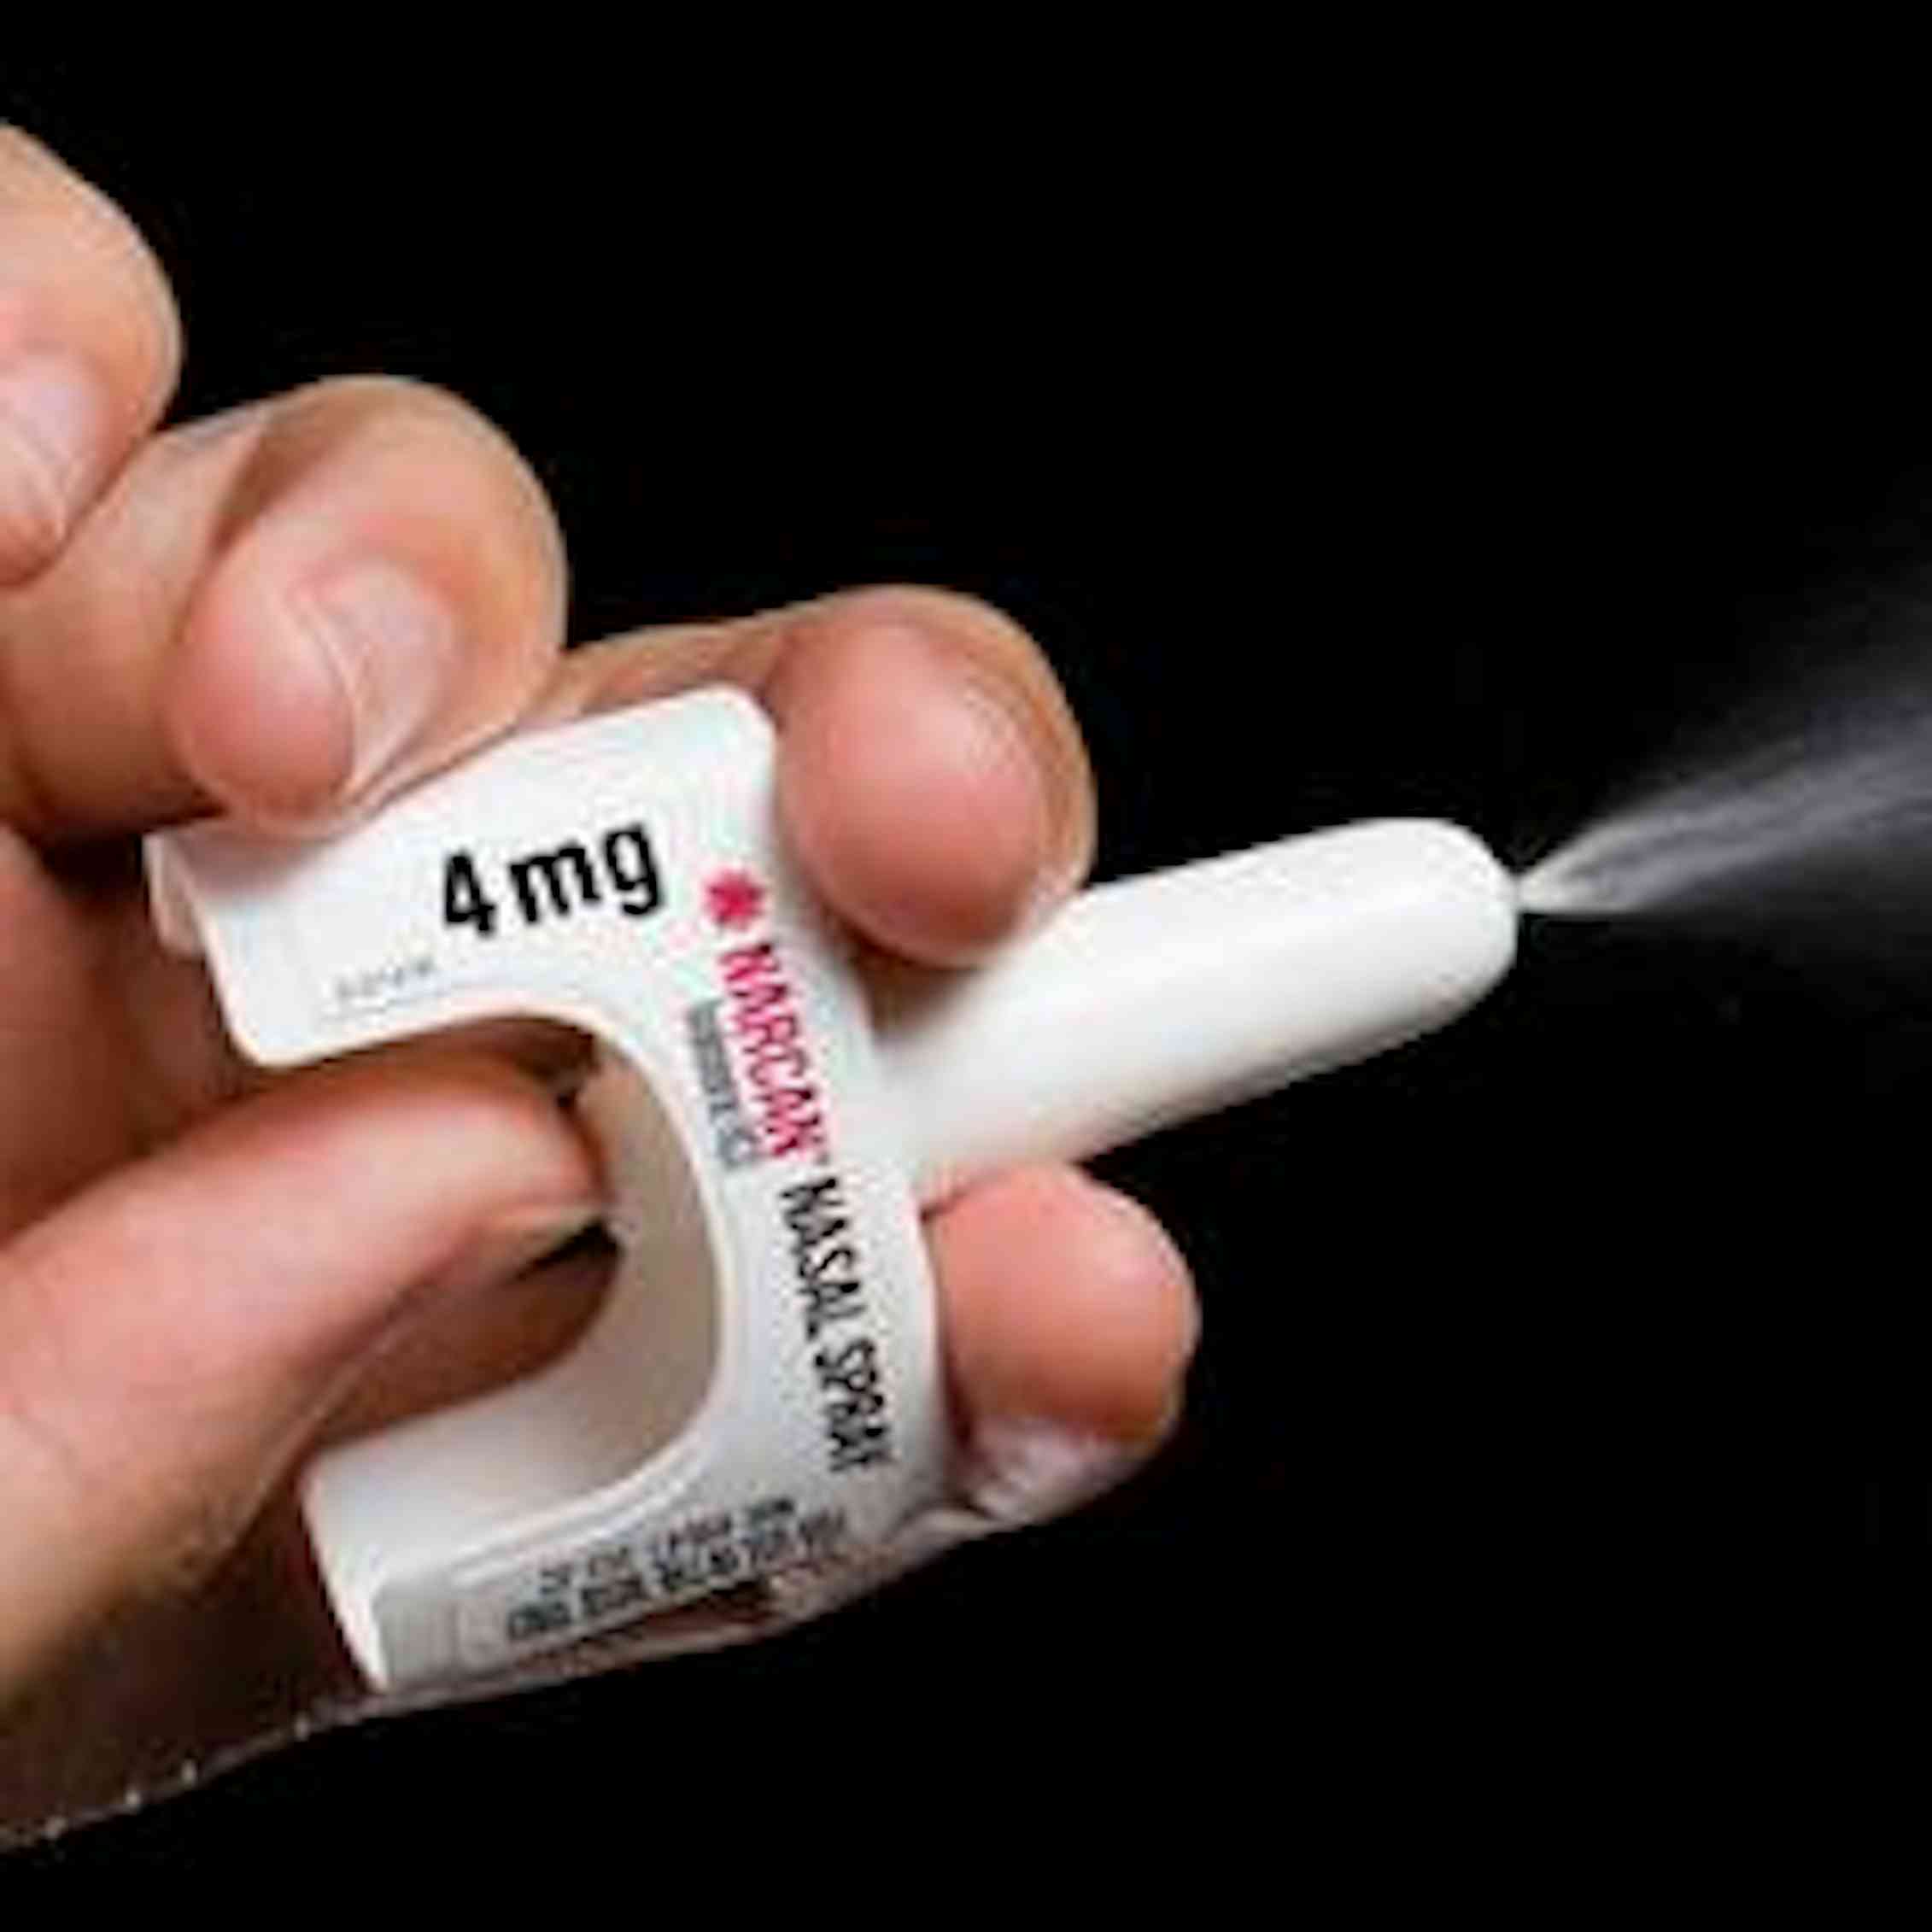 Connaissezvous la naloxone, puissant antidote aux overdoses d’opioïdes